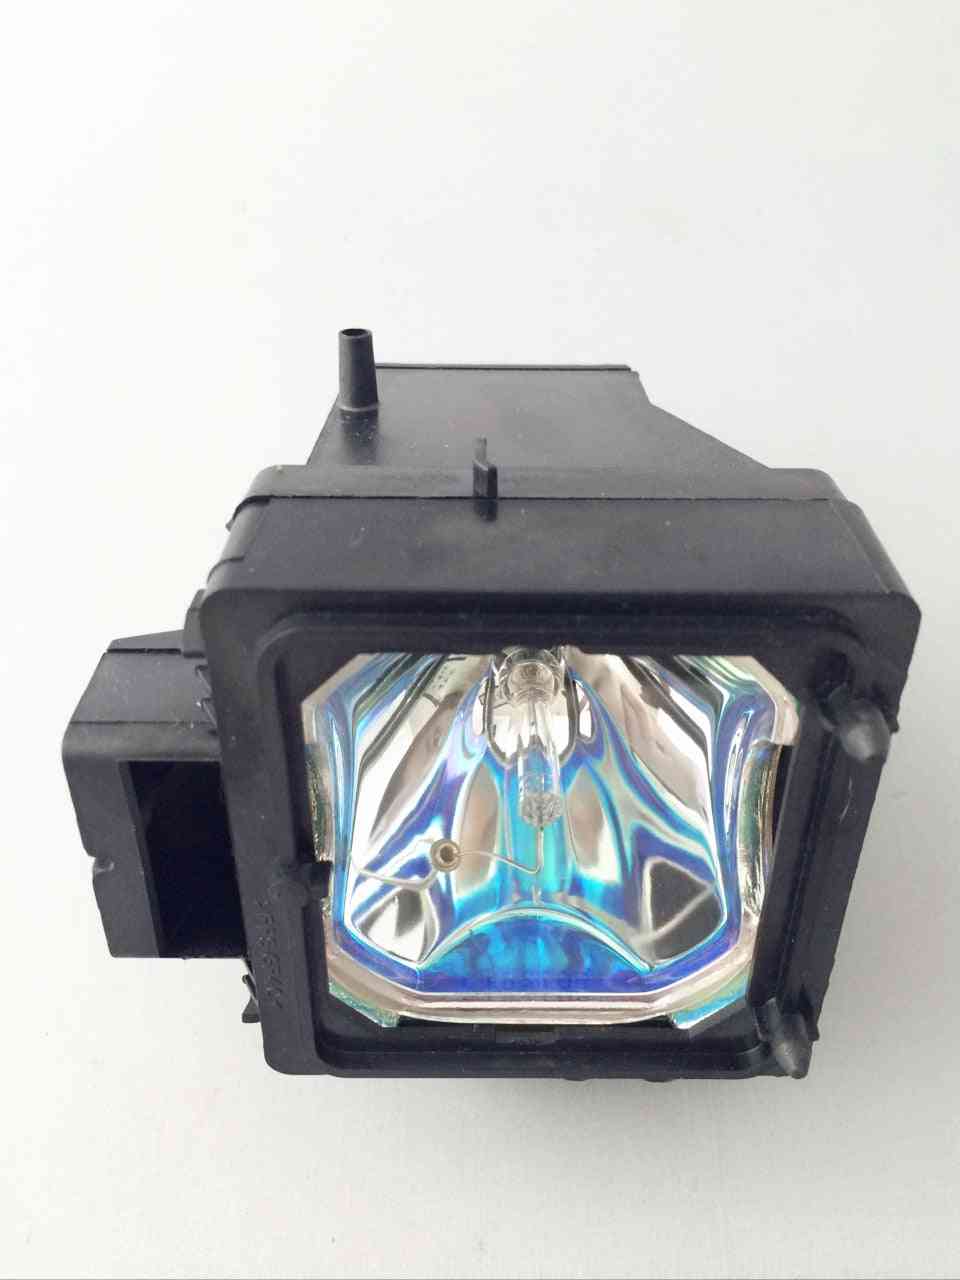 TV-Projektionslampe xl-5200 / xl 5200 für kds-50a2000 / kds-55a2000 / kds-60a2000 / kds-50a3000 / kds-55a3000 -